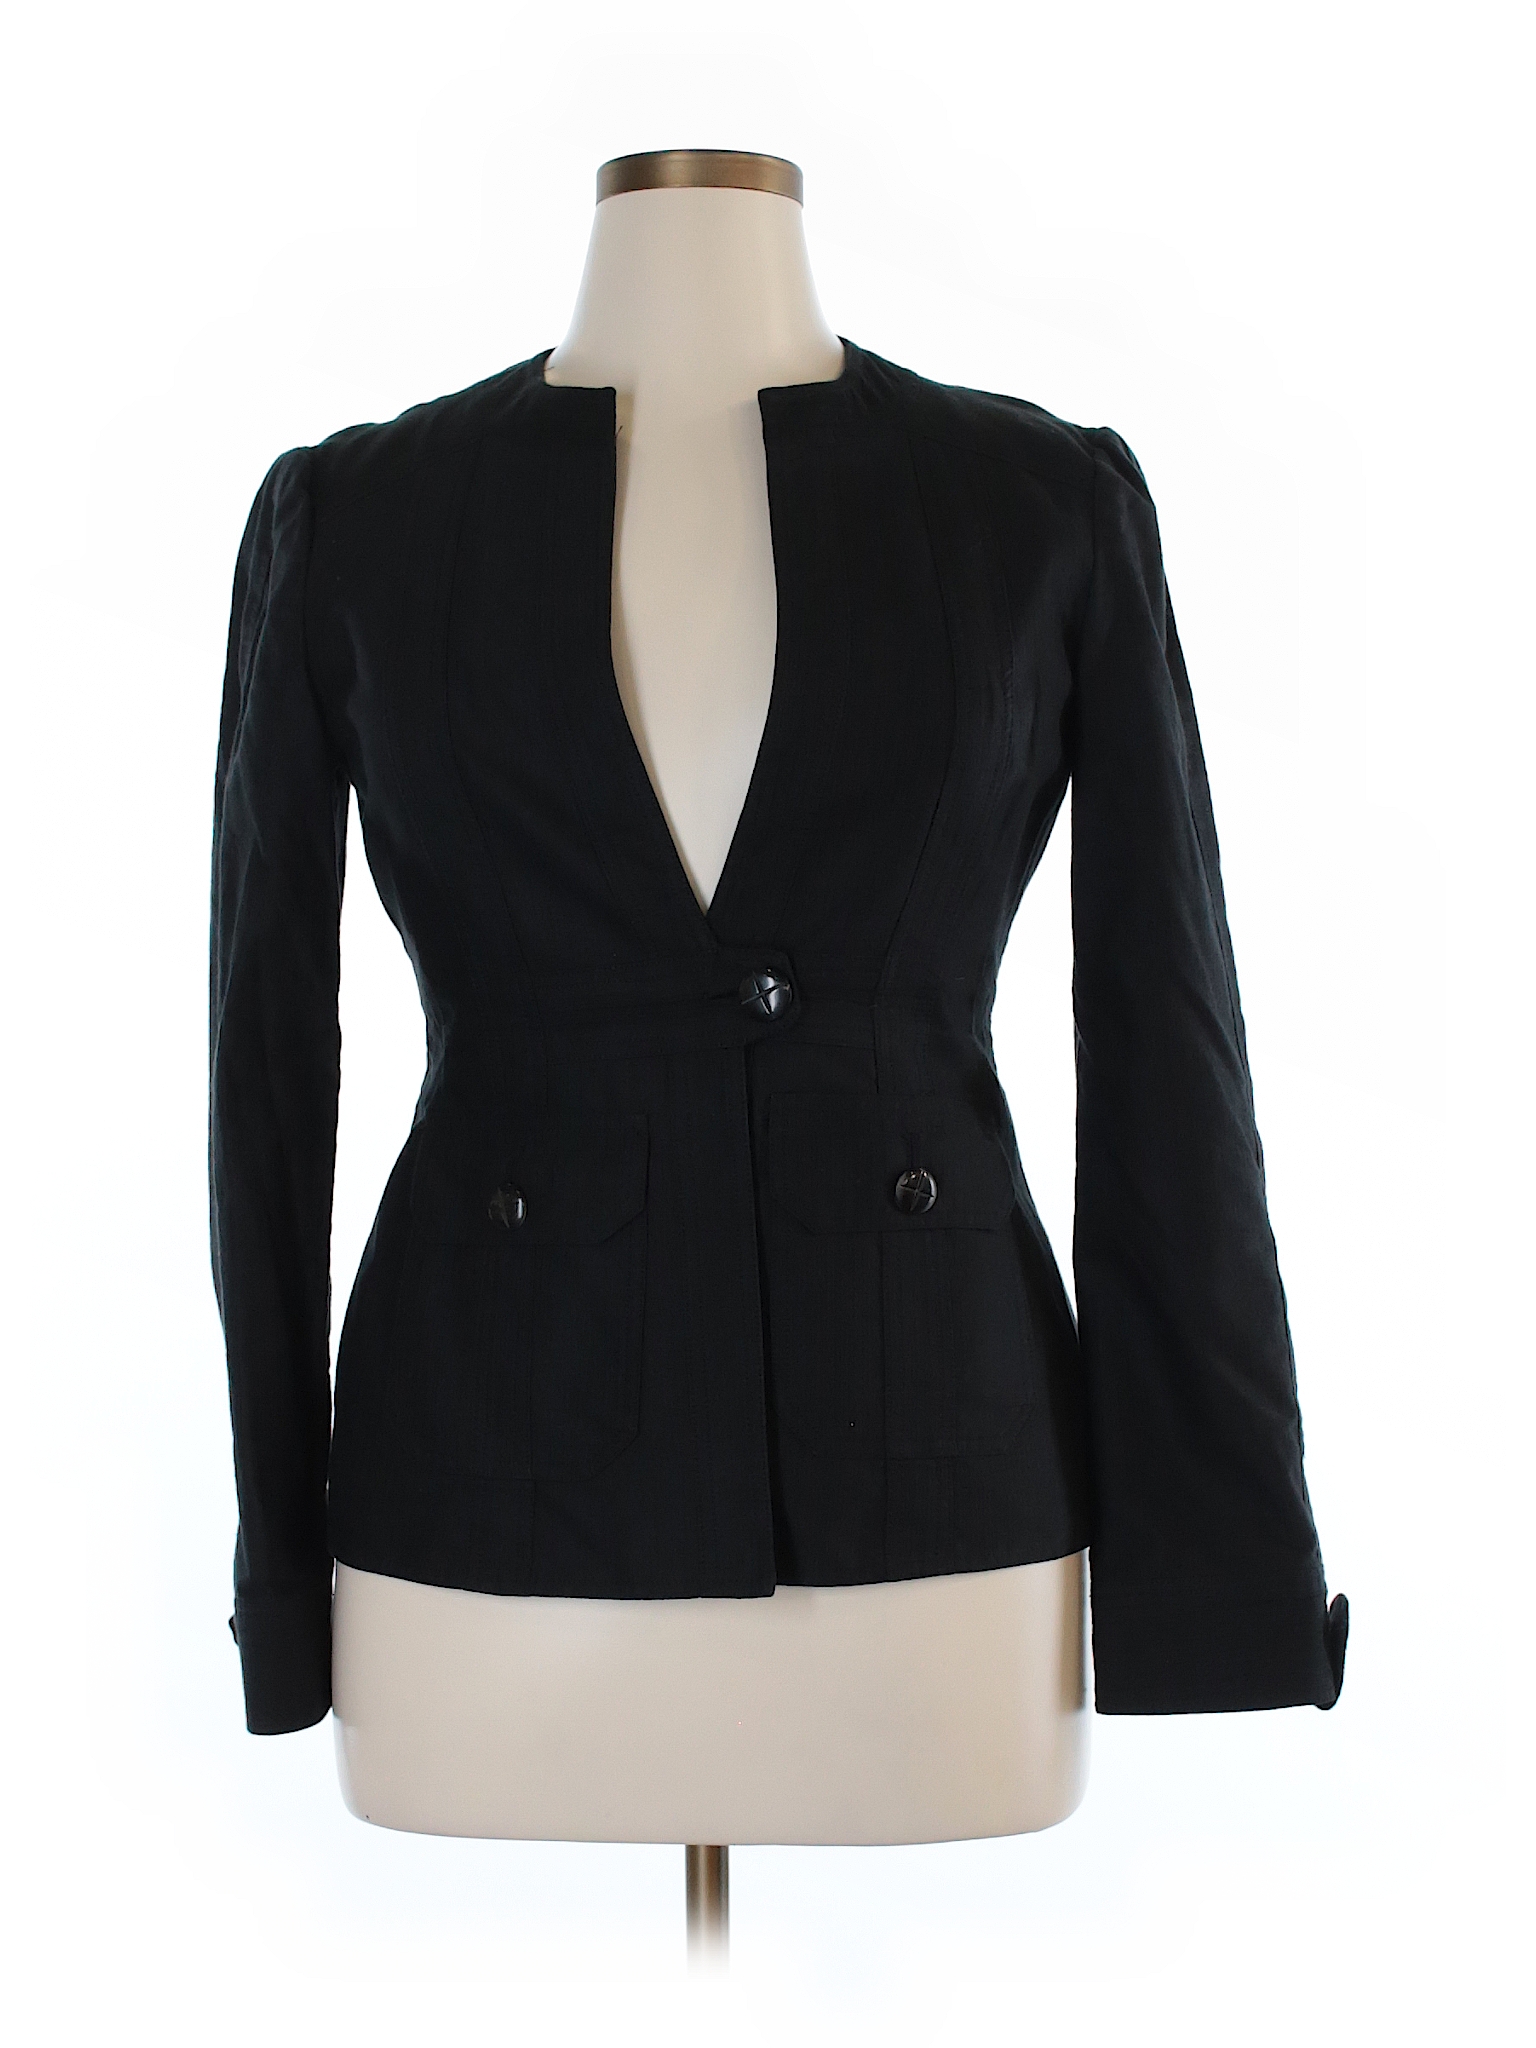 Nanette Lepore 100% Cotton Solid Black Blazer Size 12 - 81% off | thredUP